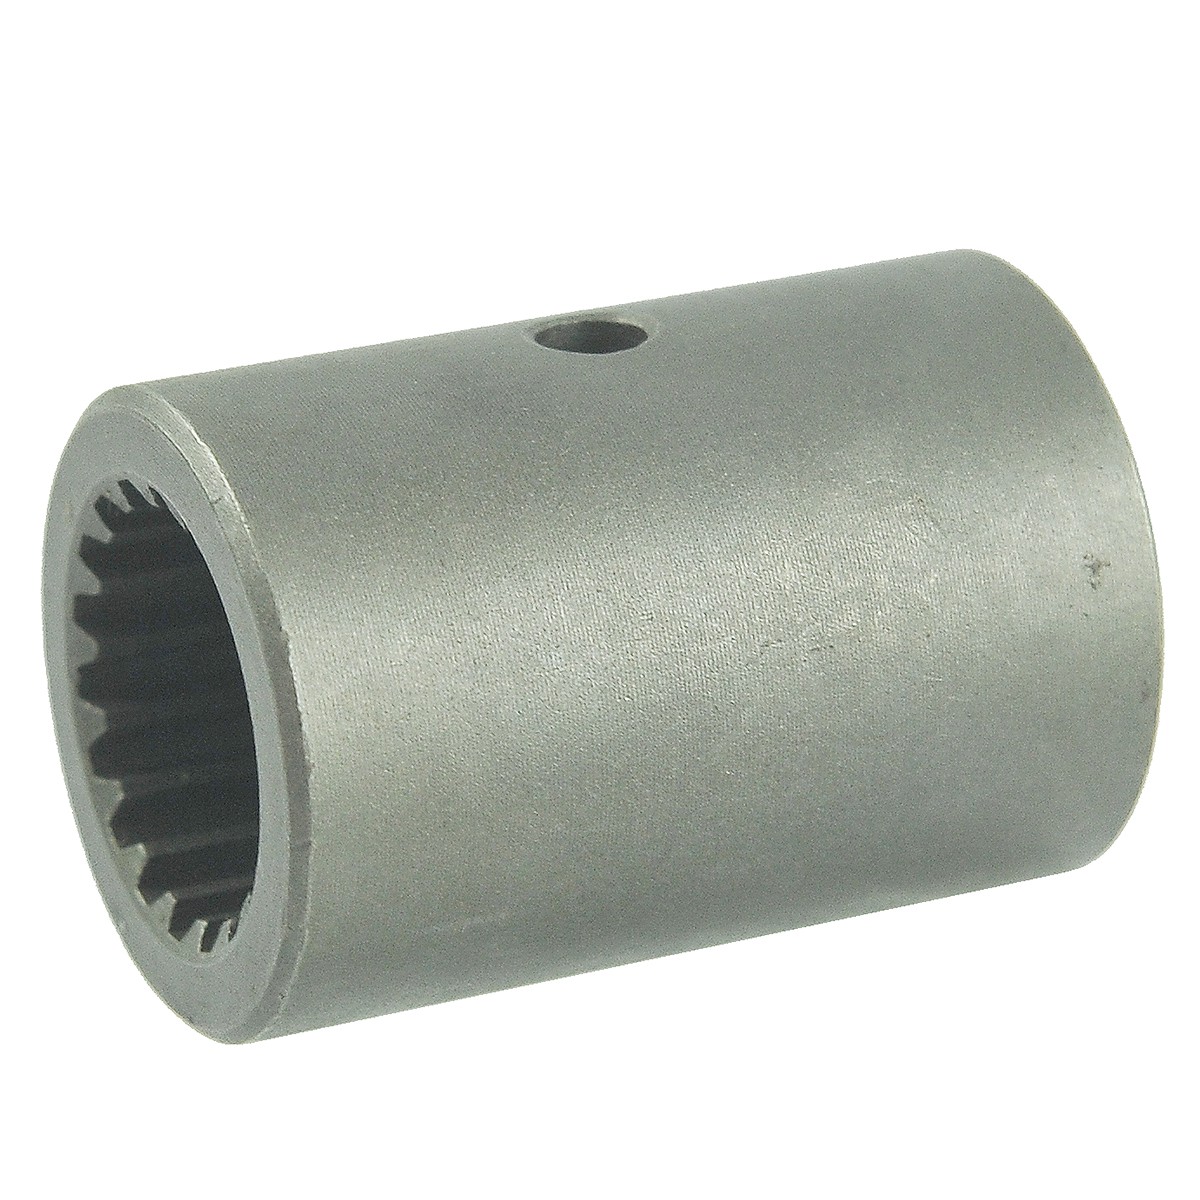 Shaft connector 18T / 51 mm / Kubota L02/M7040 / 5-15-237-04